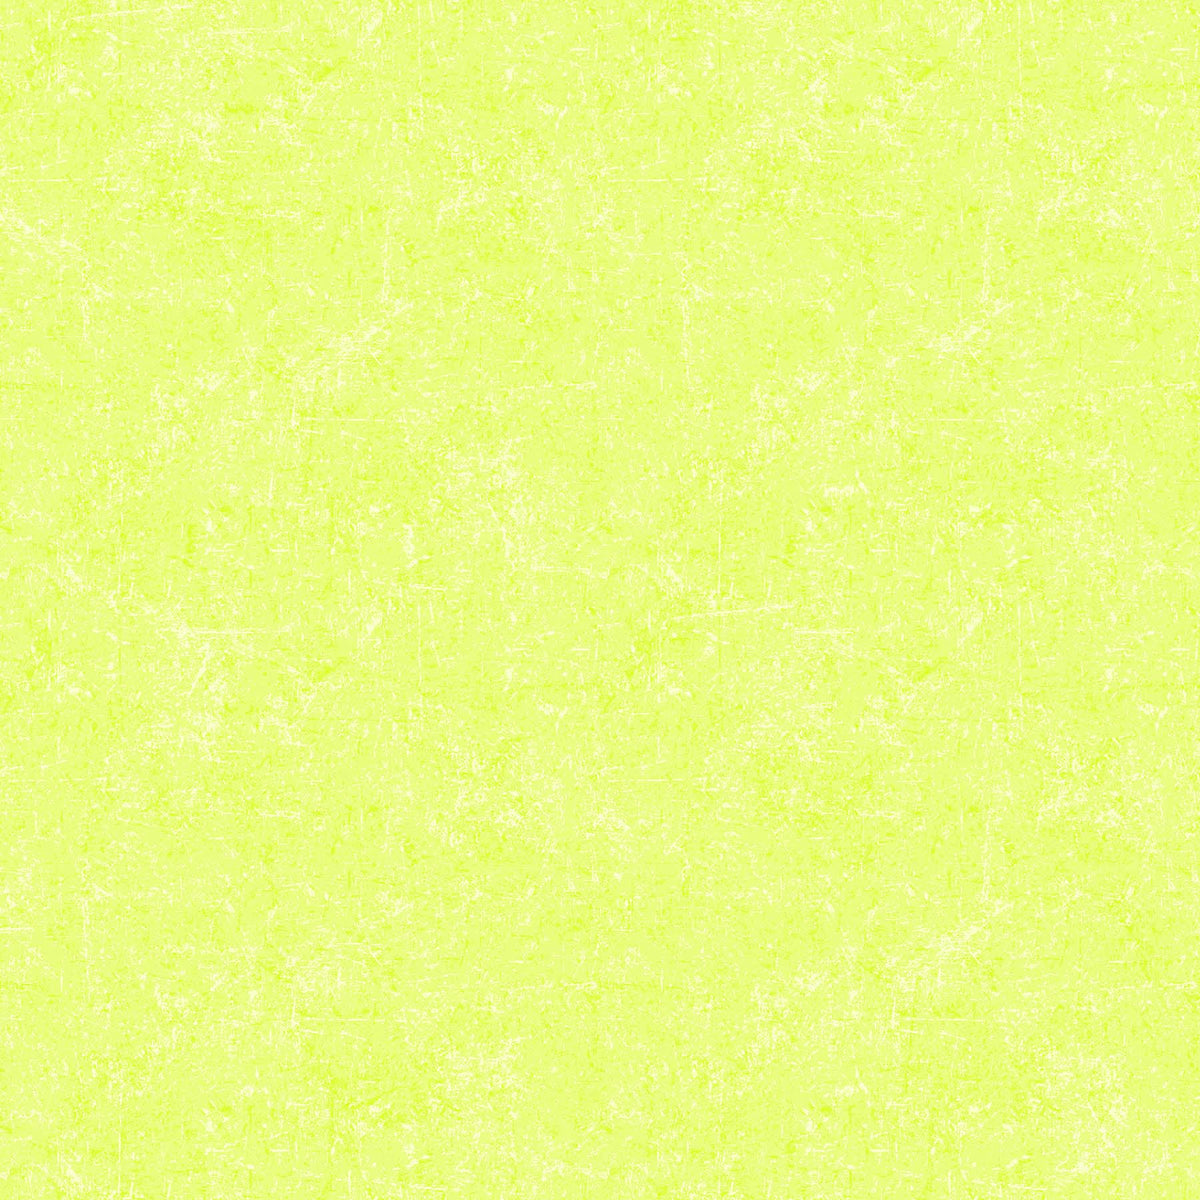 Glisten Sorbet Quilt Fabric - Blender in Lime Green - P10091-70